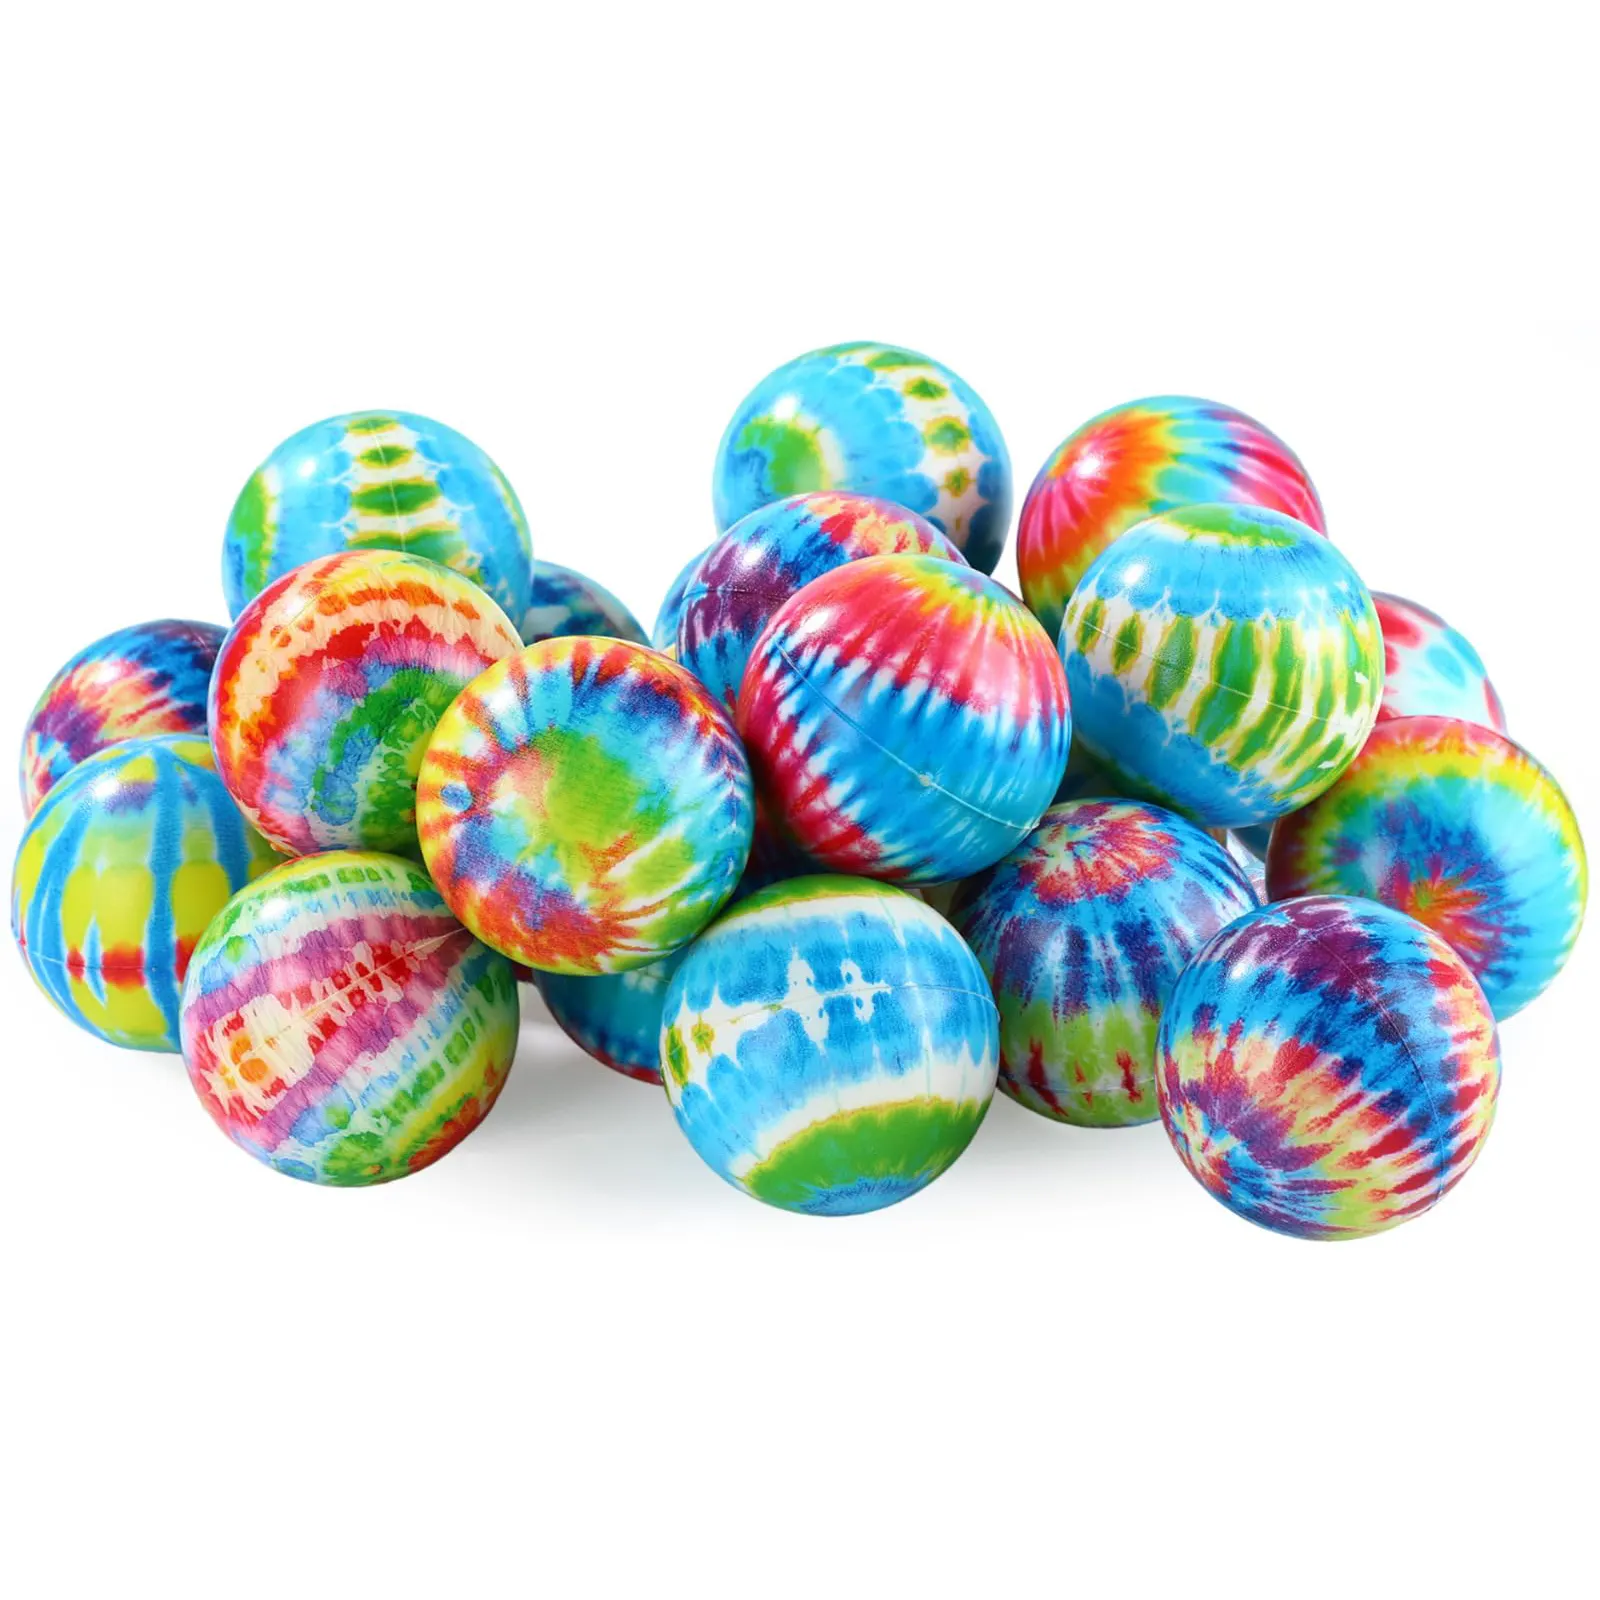 Custom Eco Friendly Pu schiuma Antistress palla da spremere giocattoli Anti-Stress palla per i regali per bambini